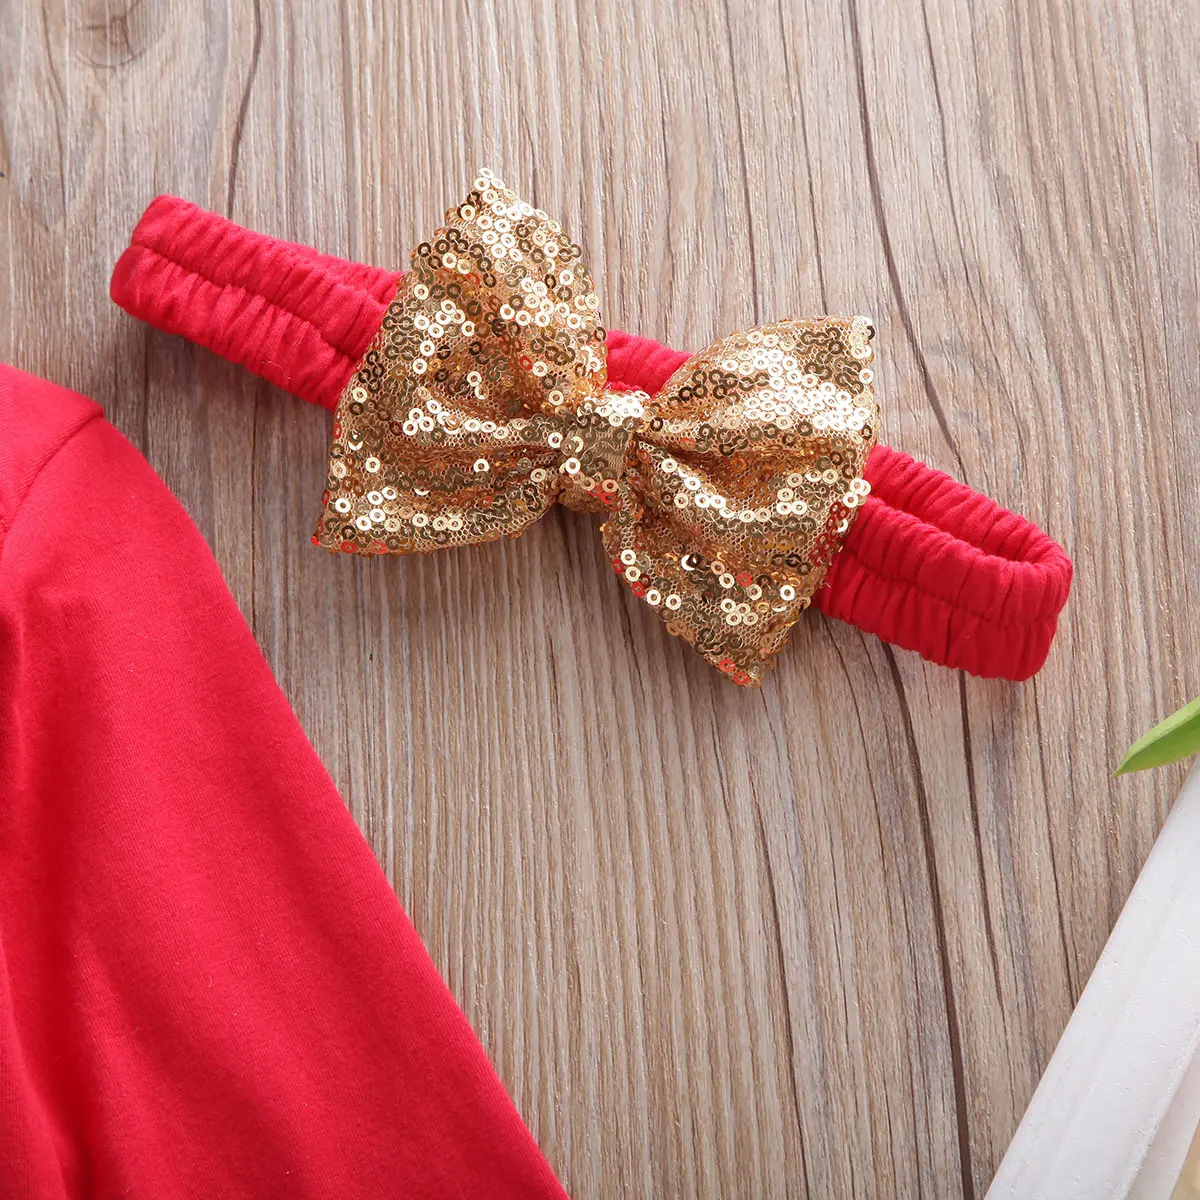 Комплекты одежды на Рождество для новорожденных девочек; комбинезон с принтом в виде букв; Кружевная юбка-пачка; комплект одежды из 3 предметов